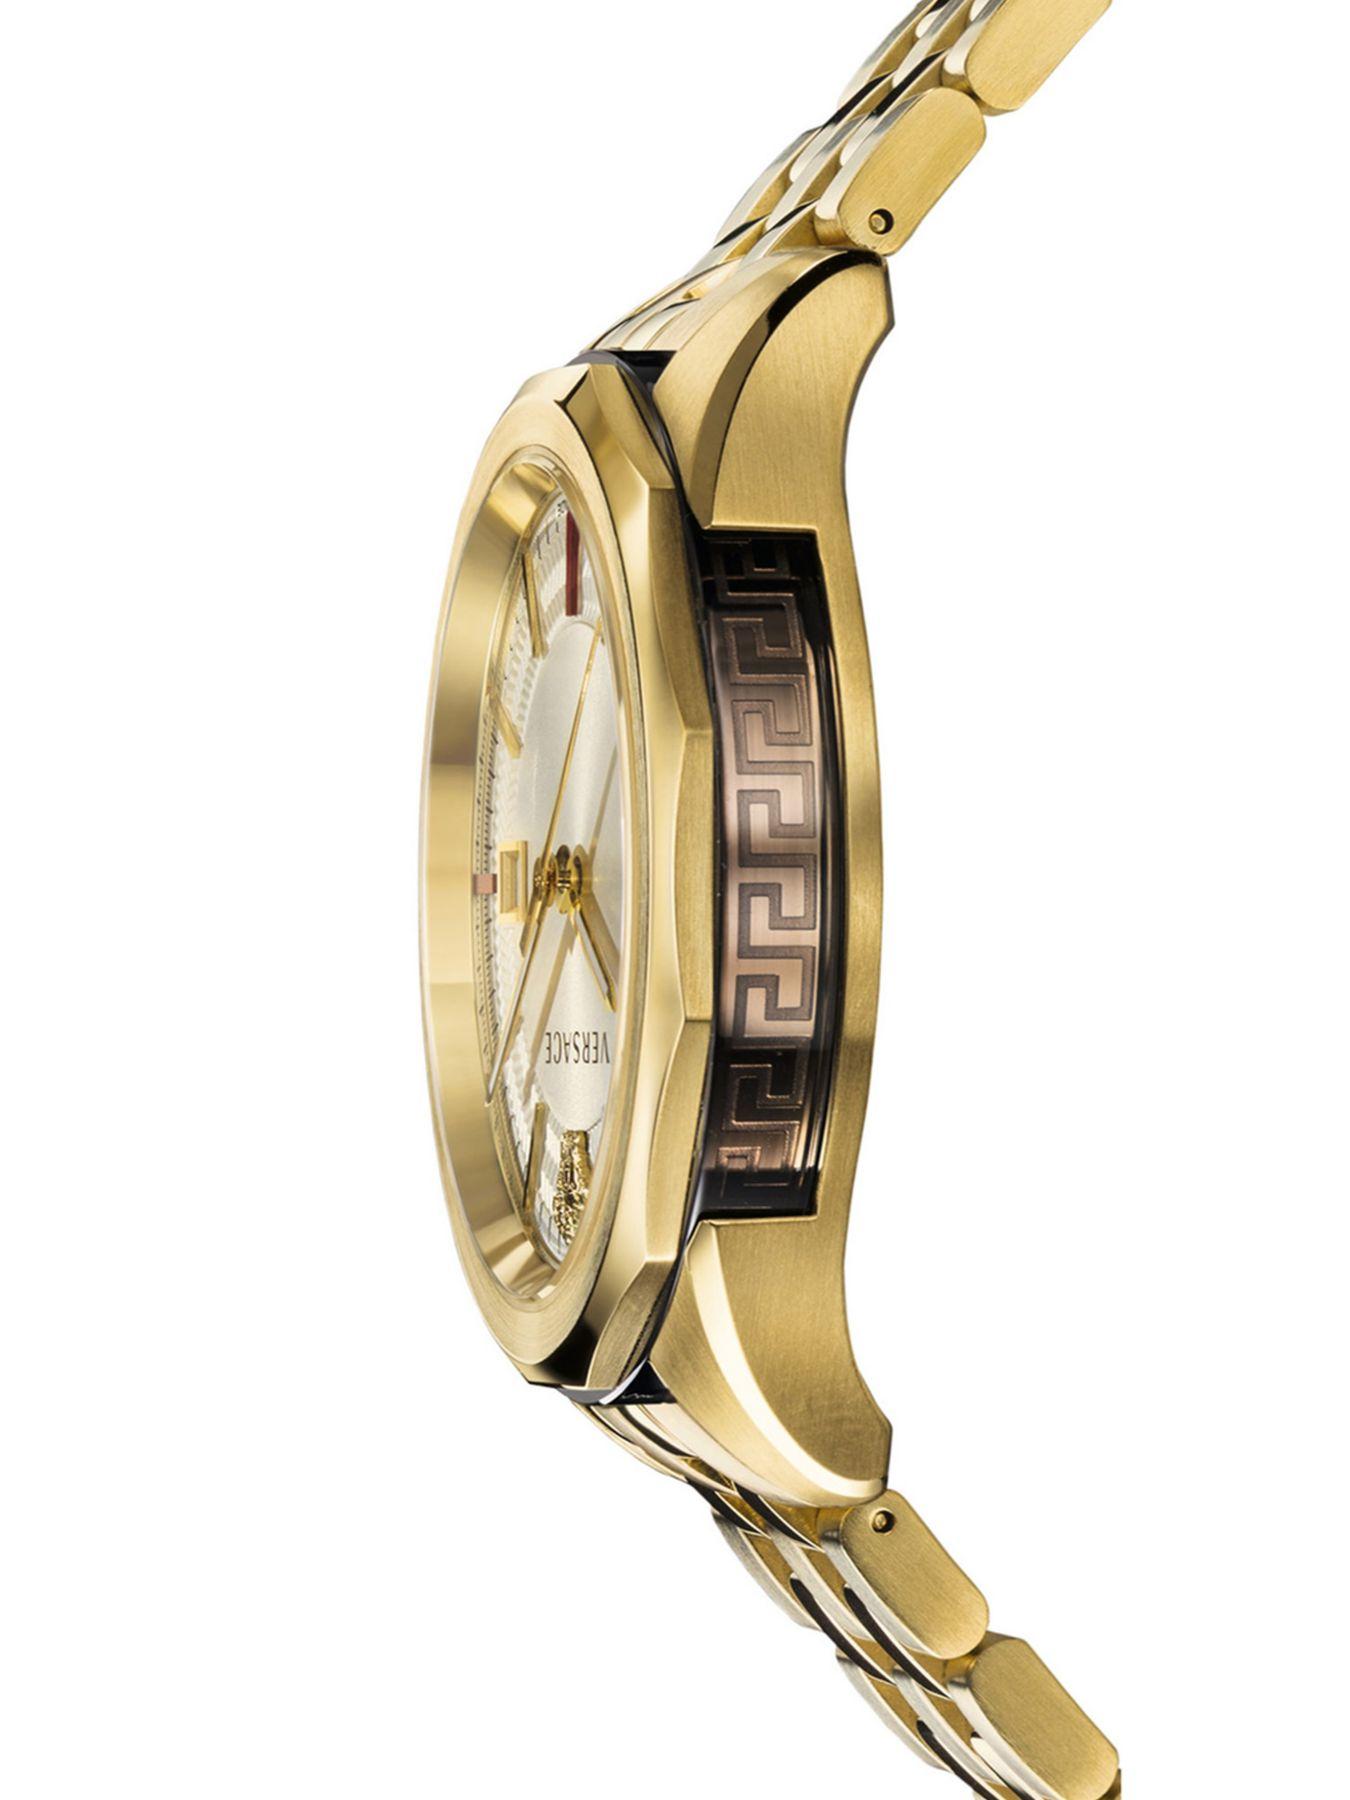 versace gold glaze watch